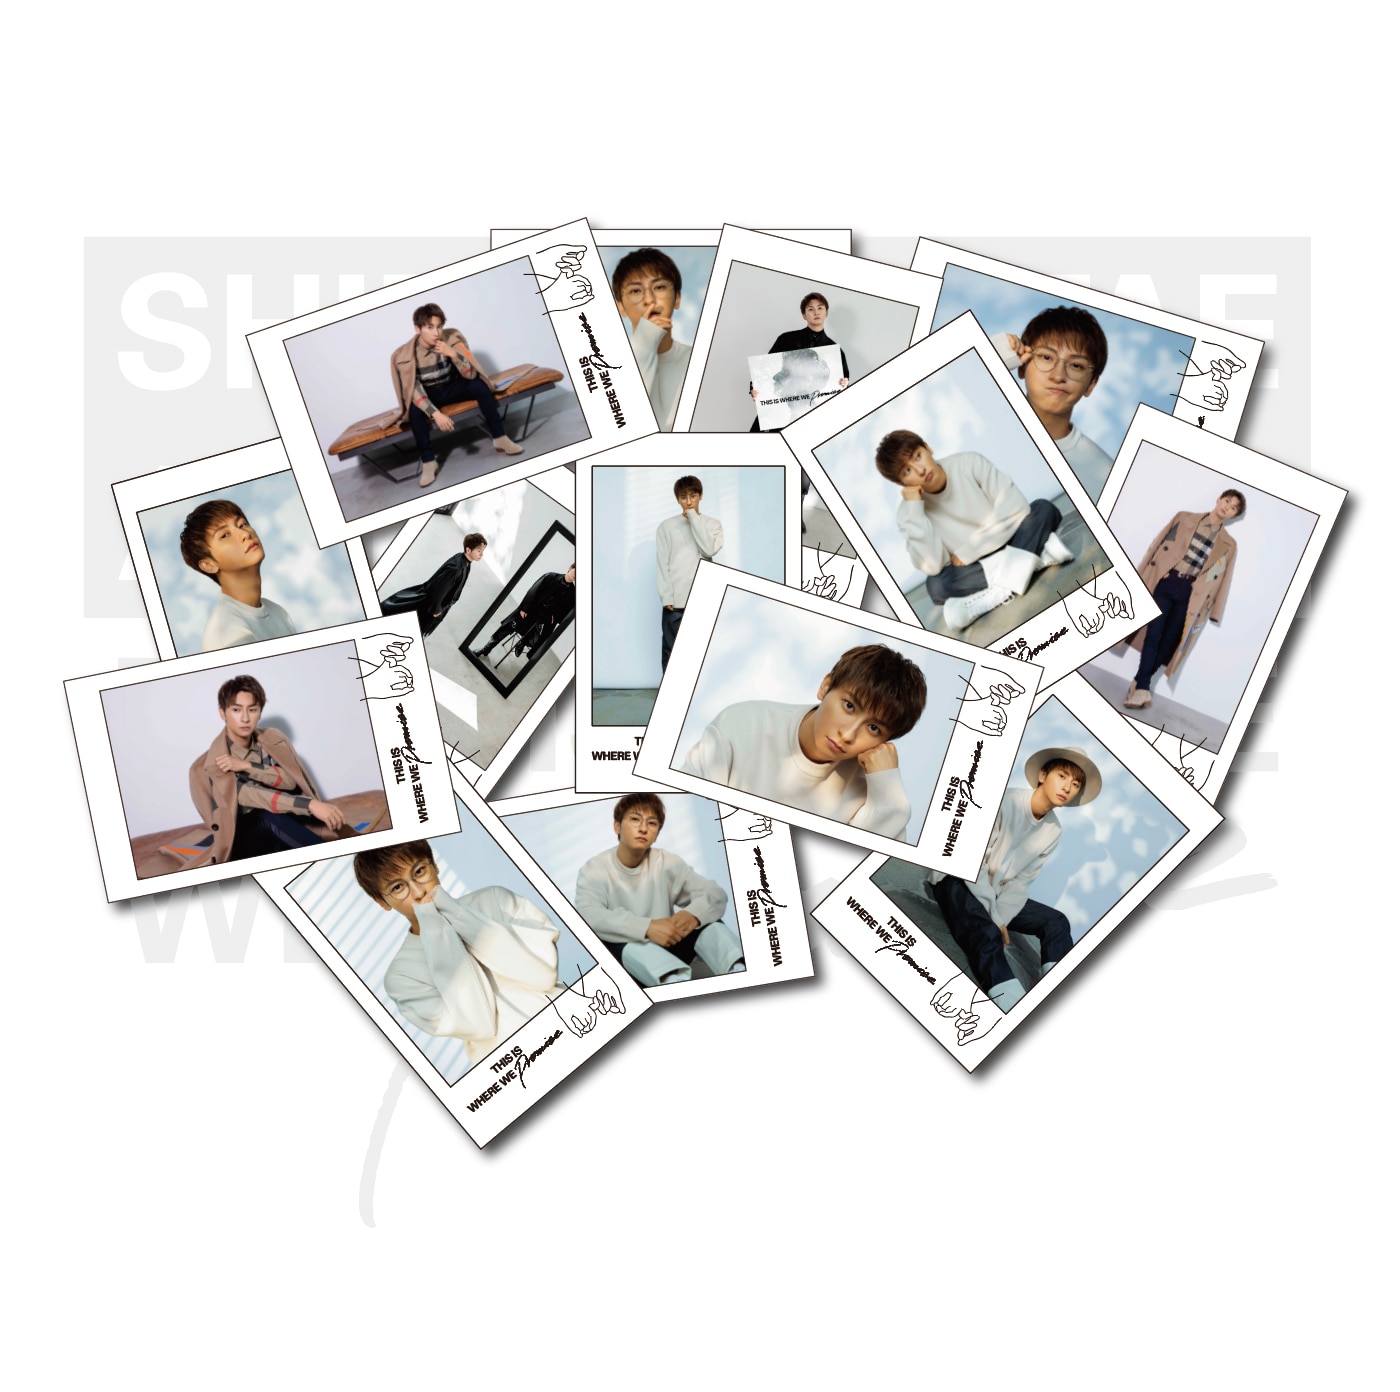 GOODS | SHINJIRO ATAE OFFICIAL WEBSITE / 與真司郎 オフィシャル 